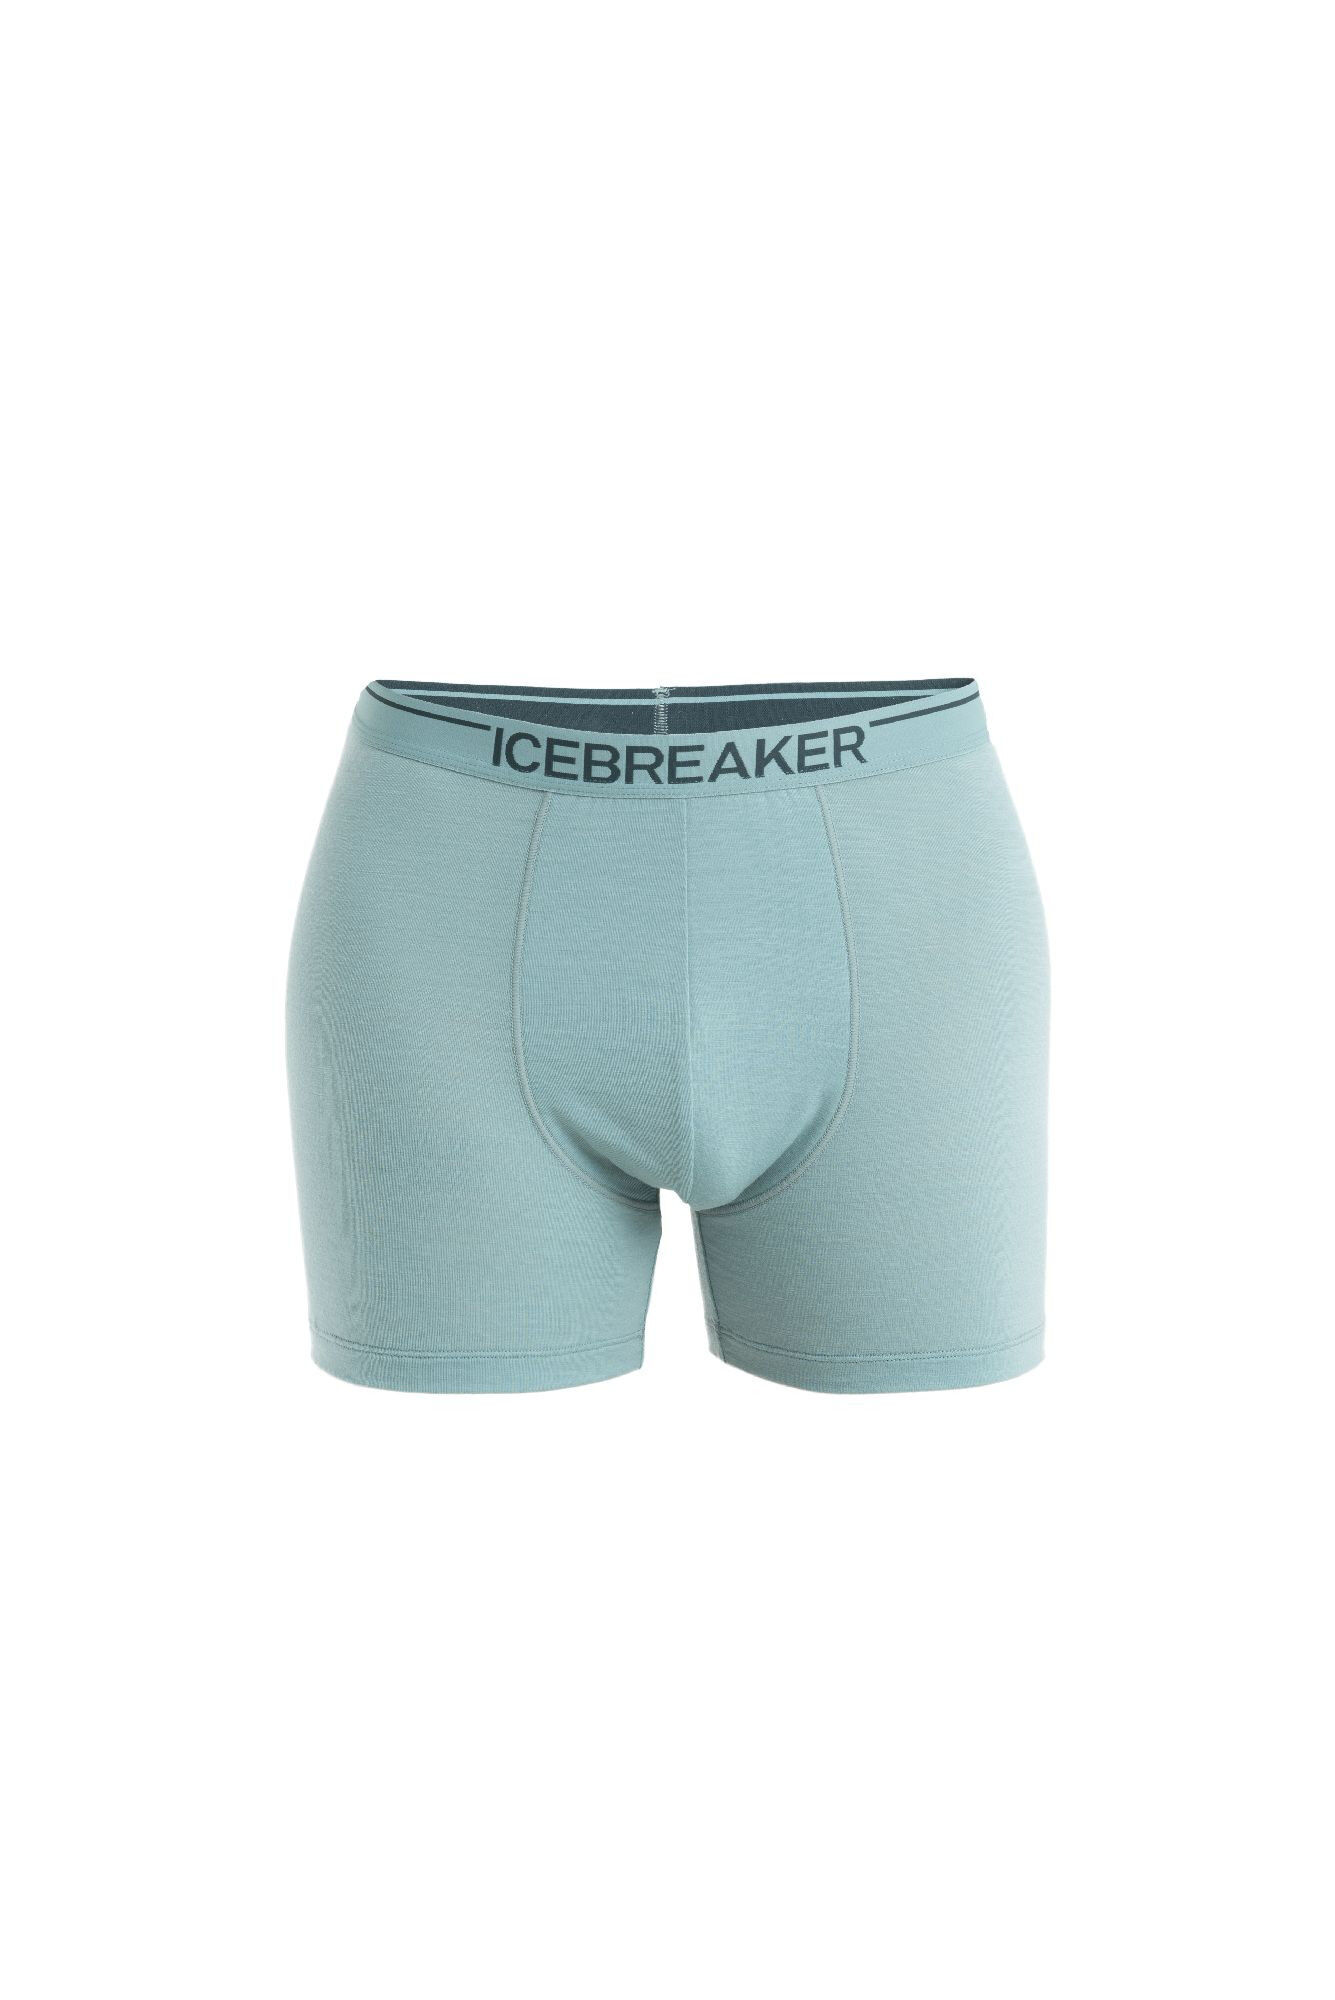 Icebreaker - Anatomica Boxers - Ropa interior - Hombre